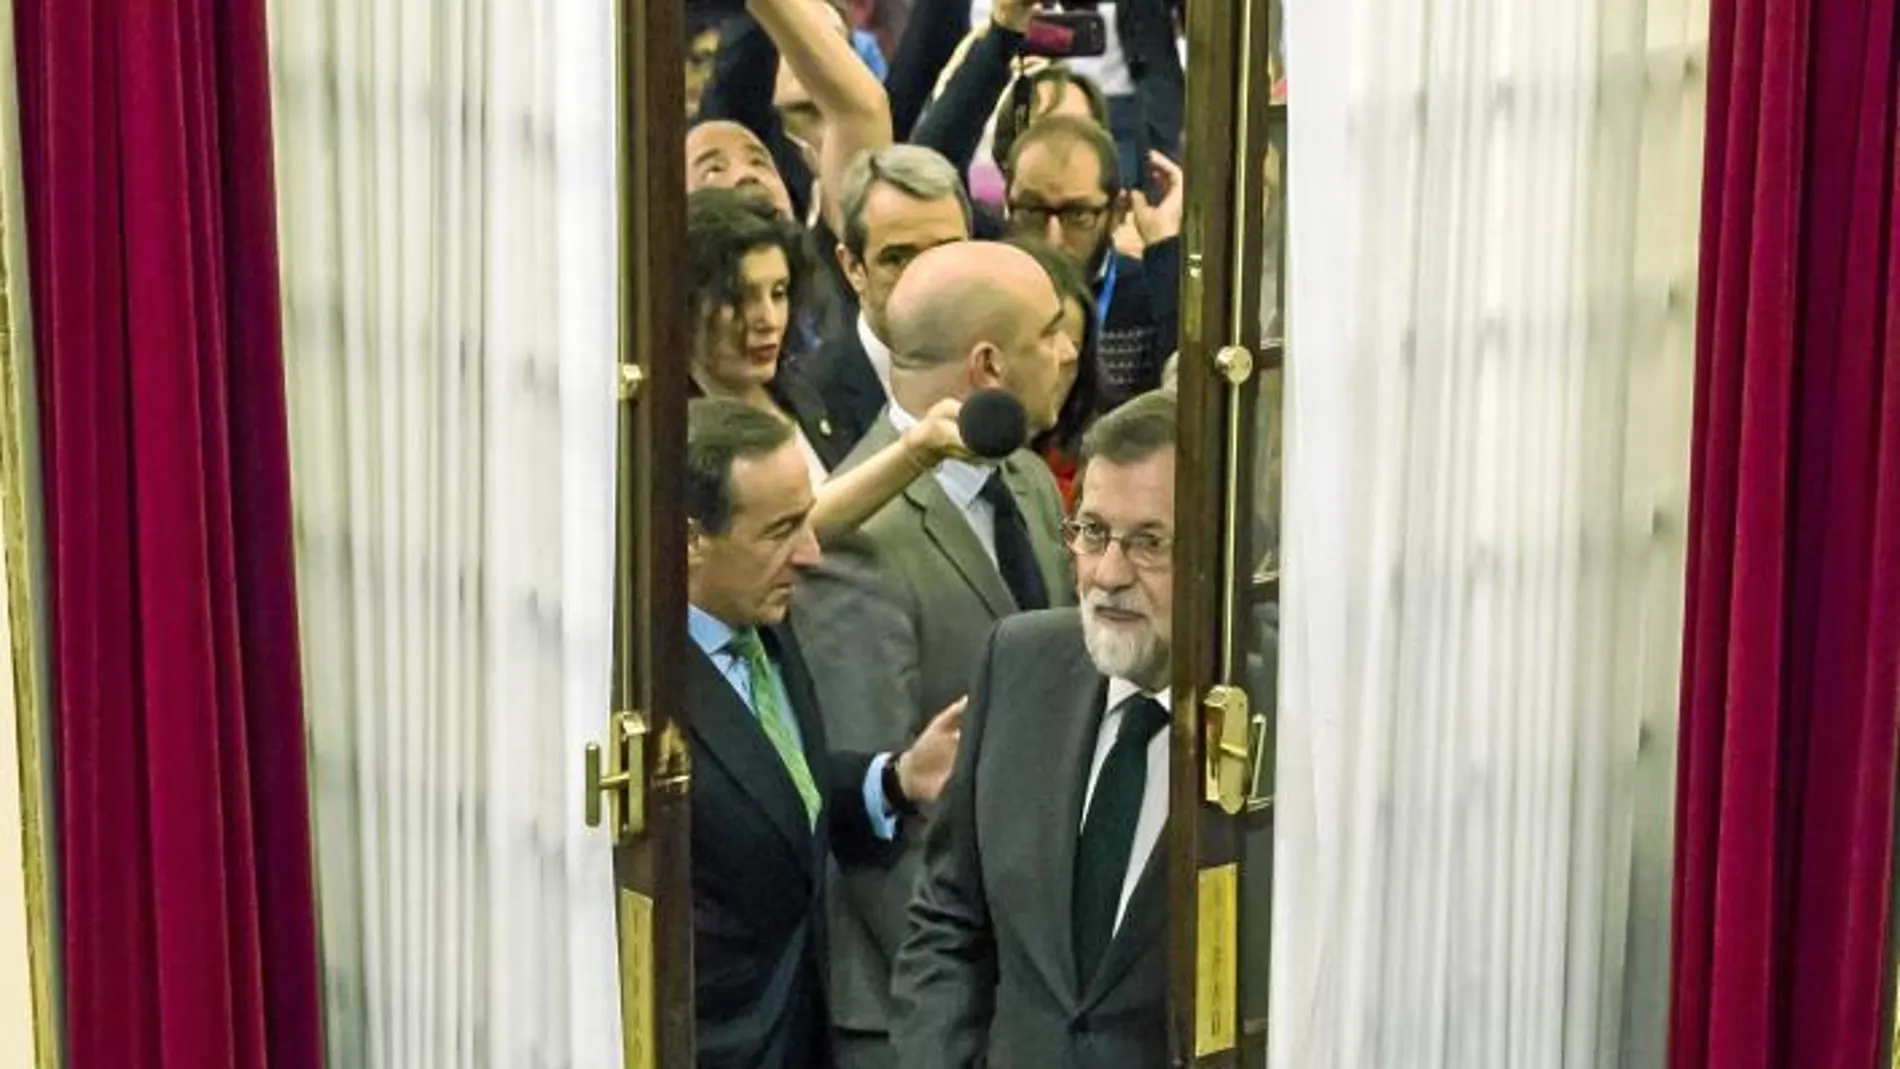 El ex presidente Mariano Rajoy entra en el hemiciclo del Congreso en la segunda jornada de la moción de censura / Alberto R. Roldán